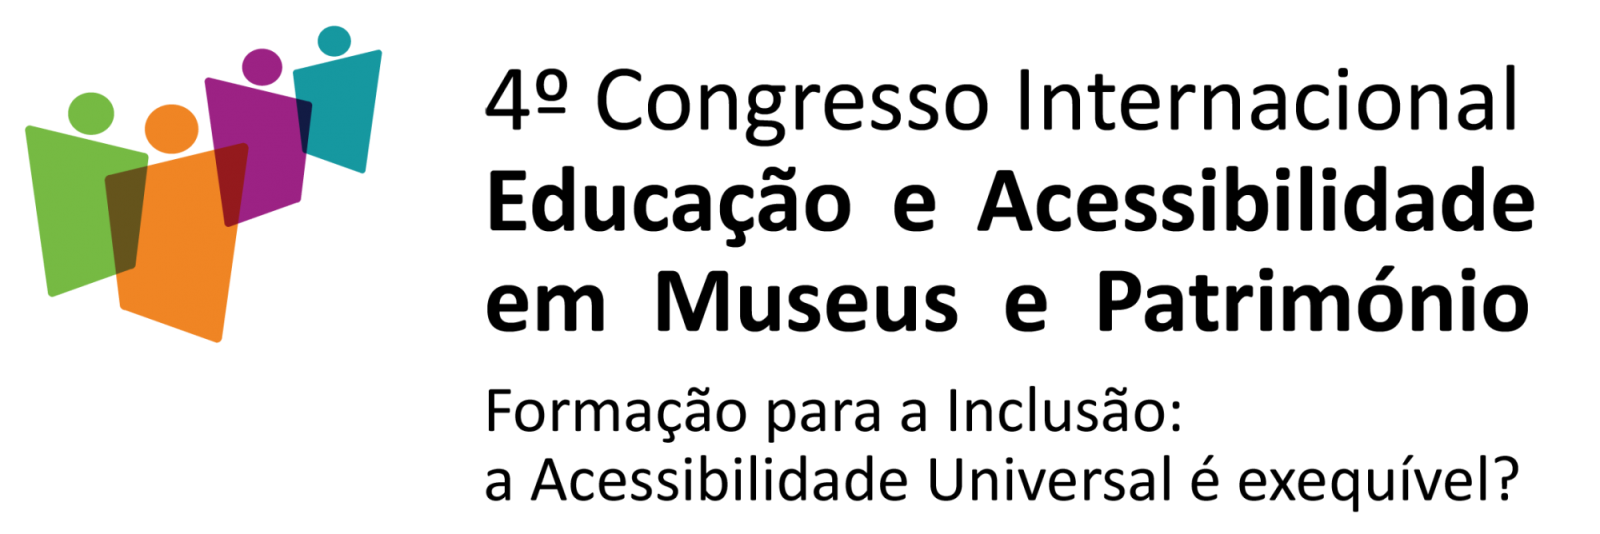 4º Congresso Internacional Educação e Acessibilidade em Museus e Património